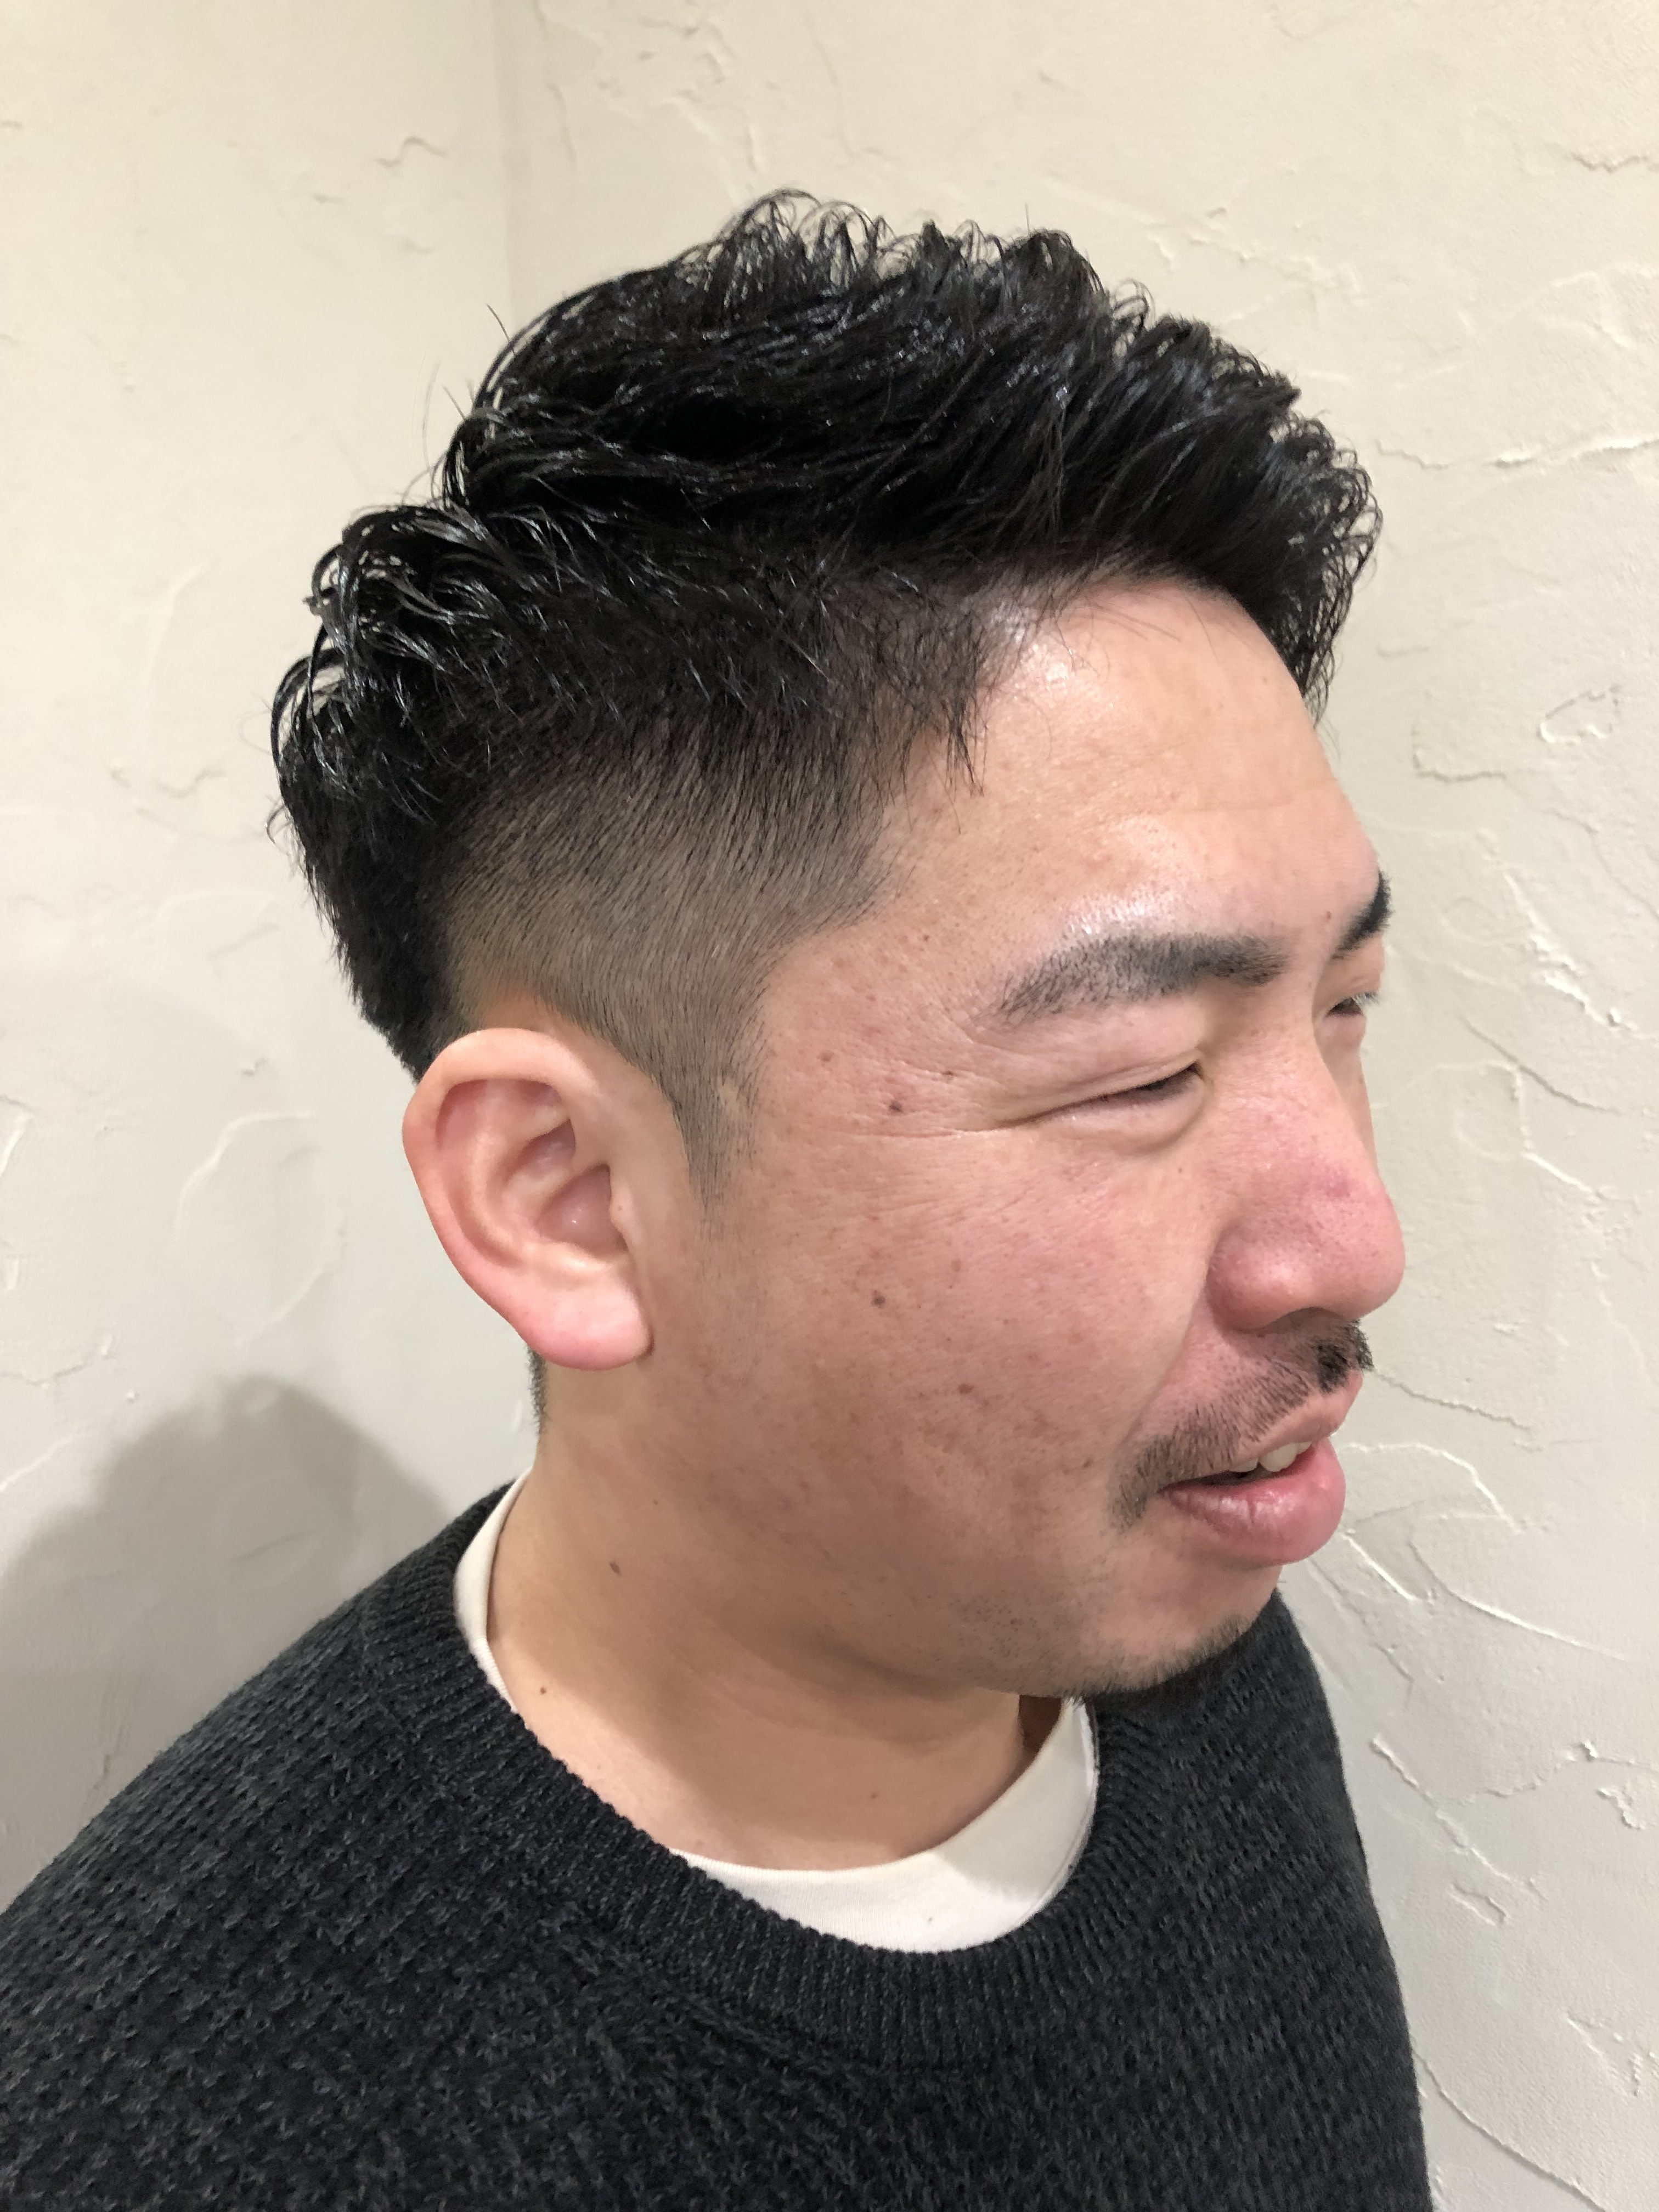 enishi hair works【エニシヘアーワークス】のスタイル紹介。ホットパーマ